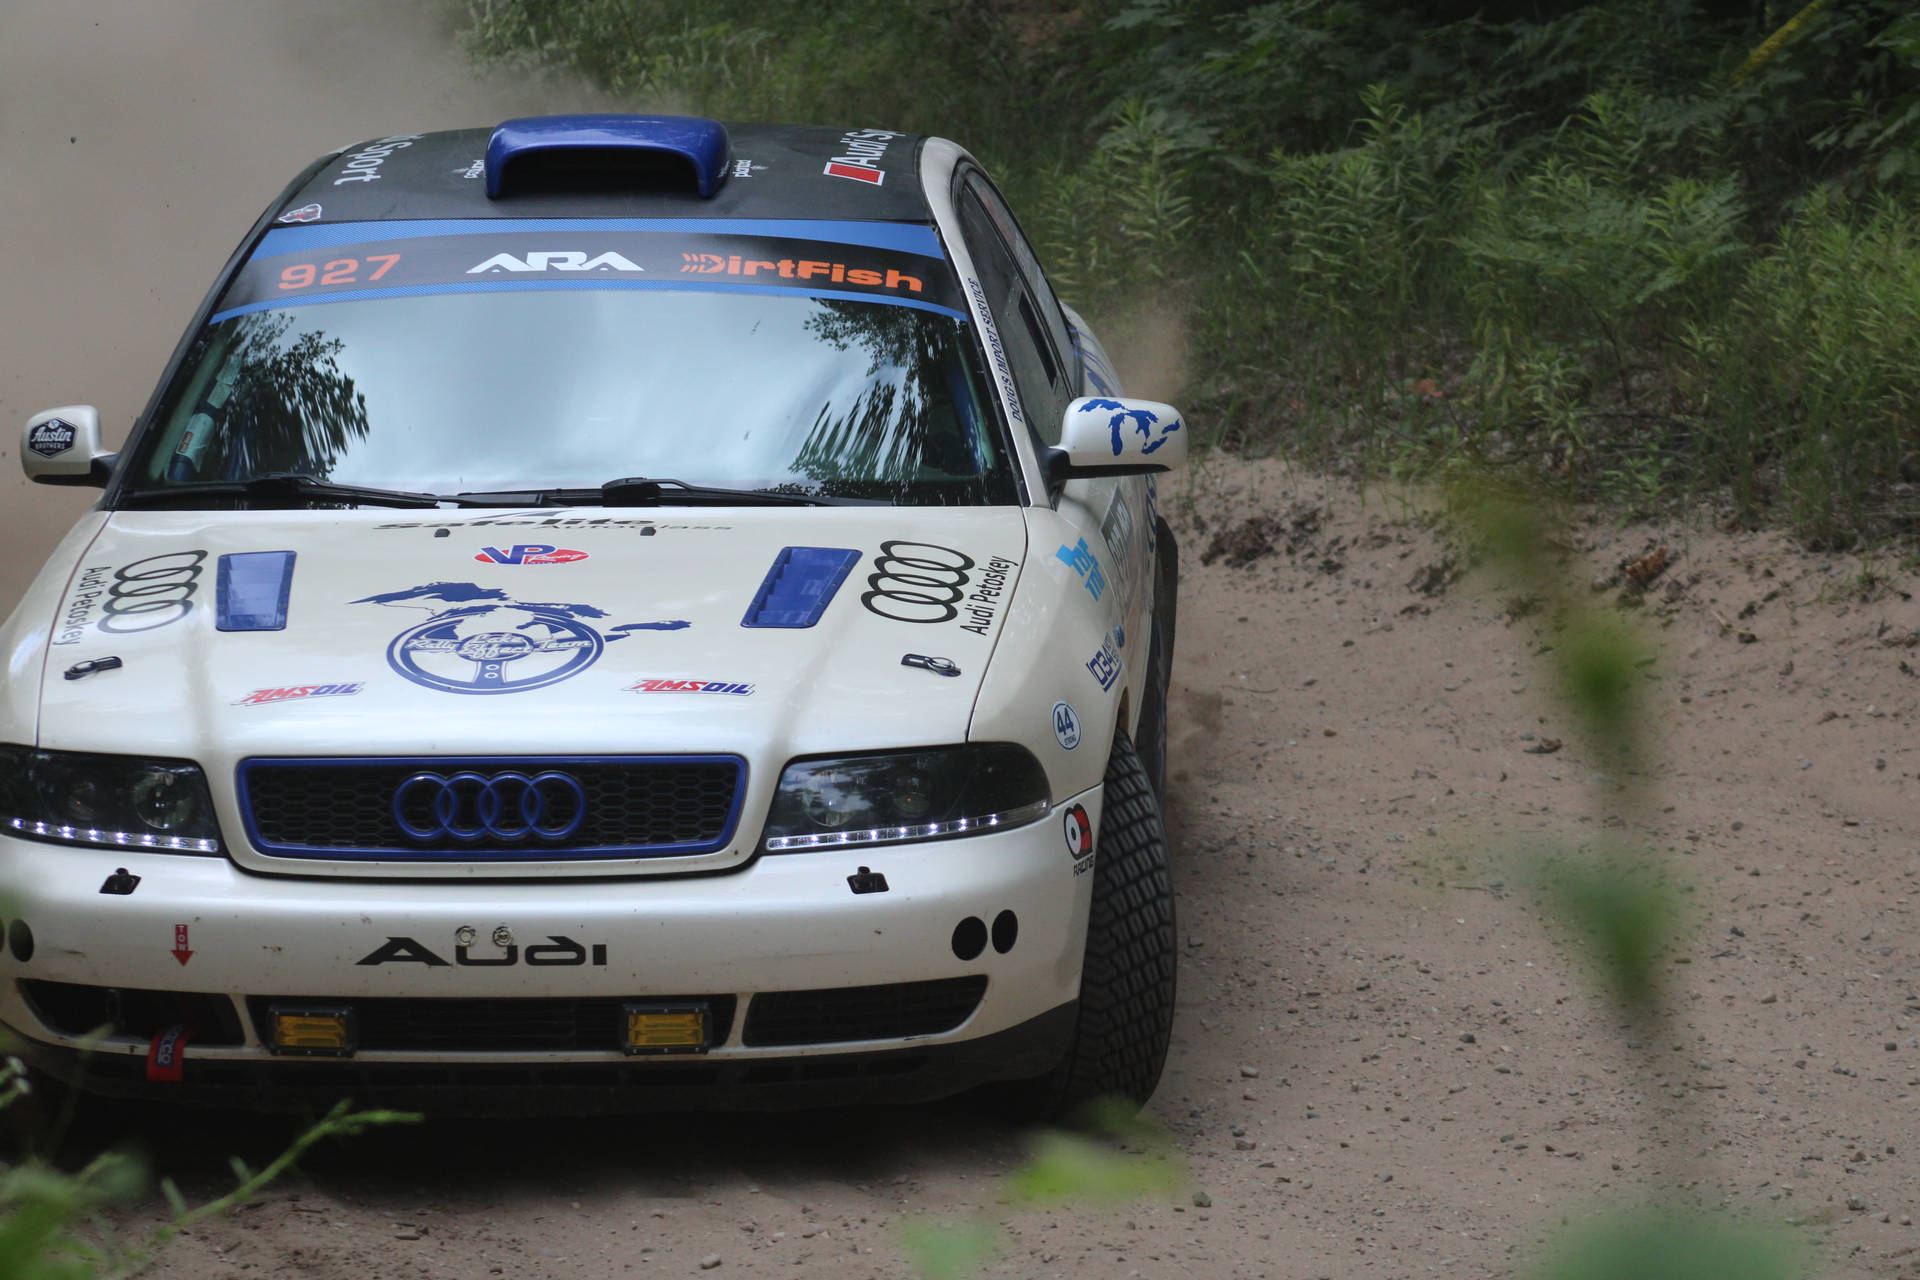 Audi A4 B5 Model Racing in Dirt Rally Wallpaper